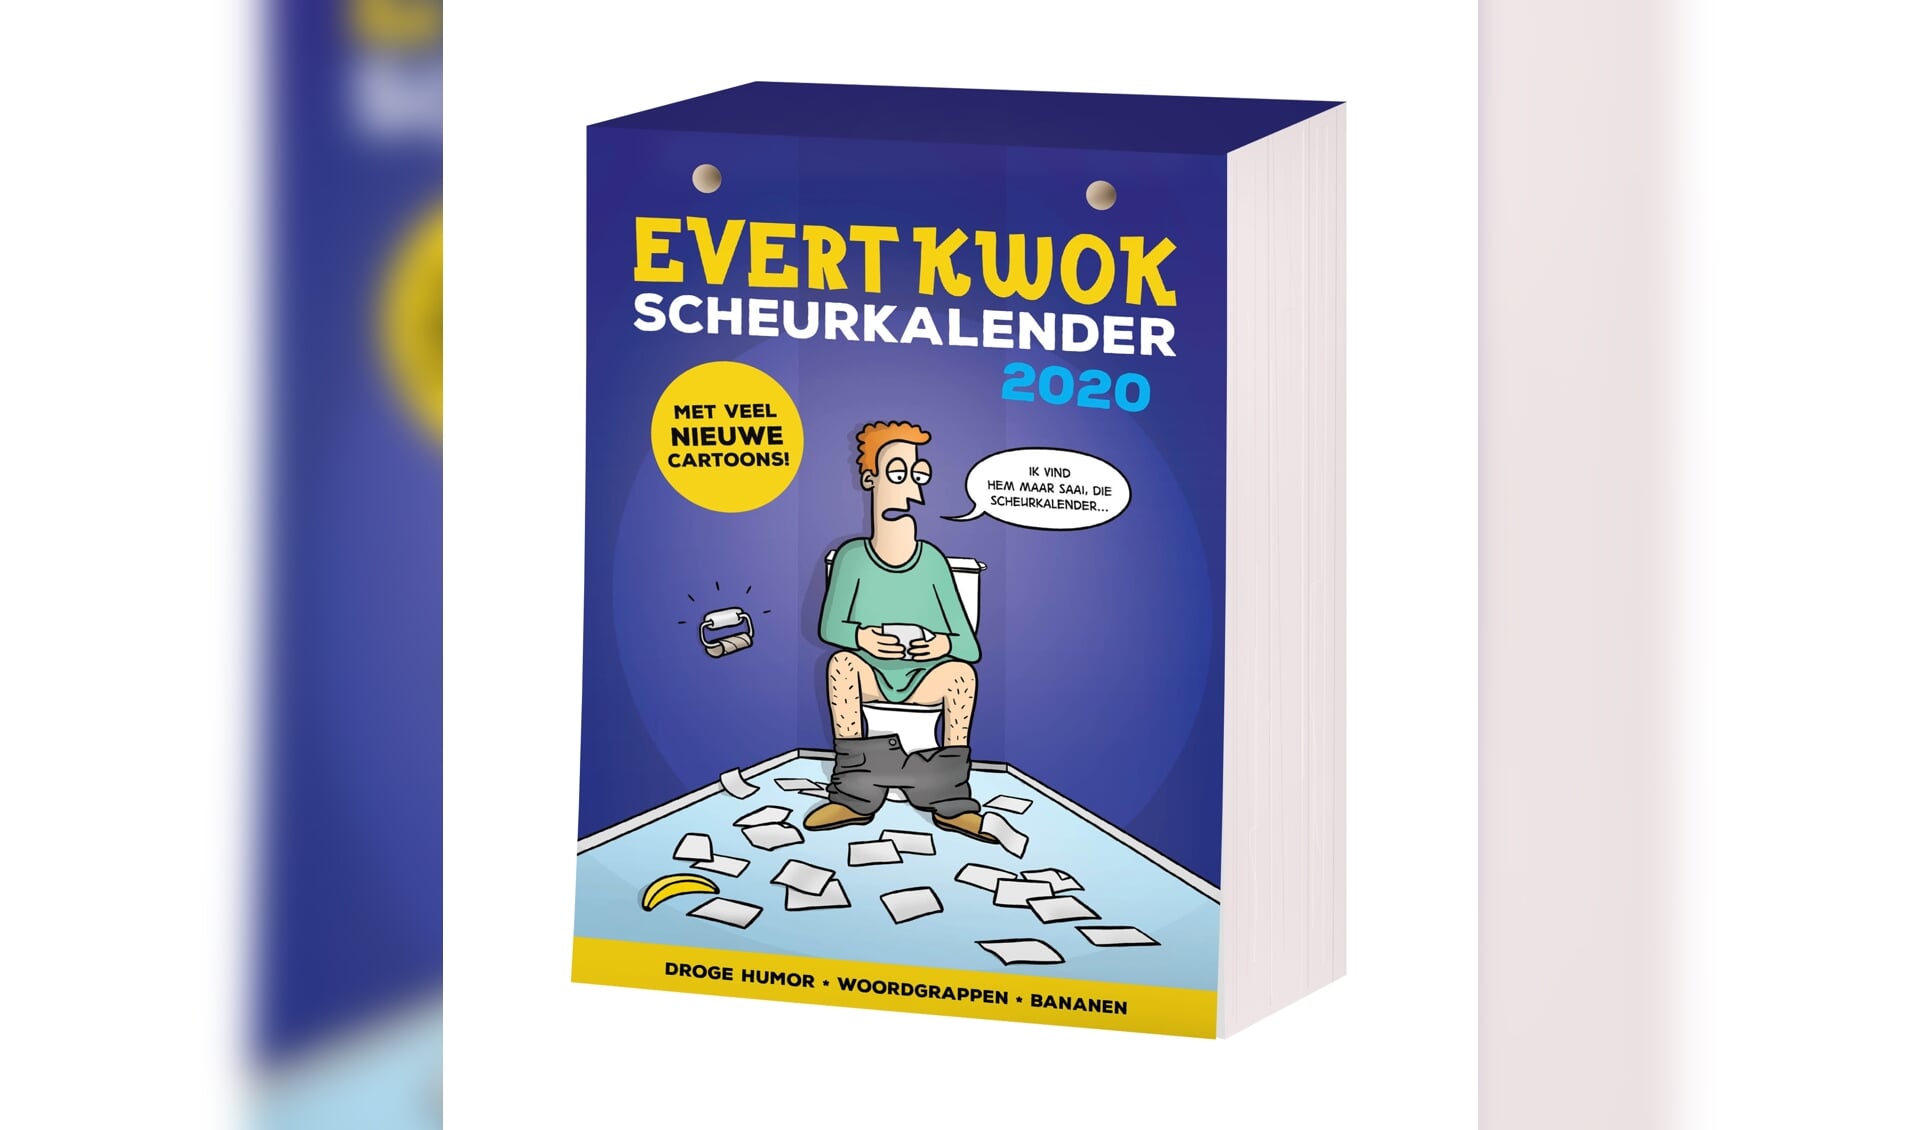 Evert Kwok Scheurkalender 2020